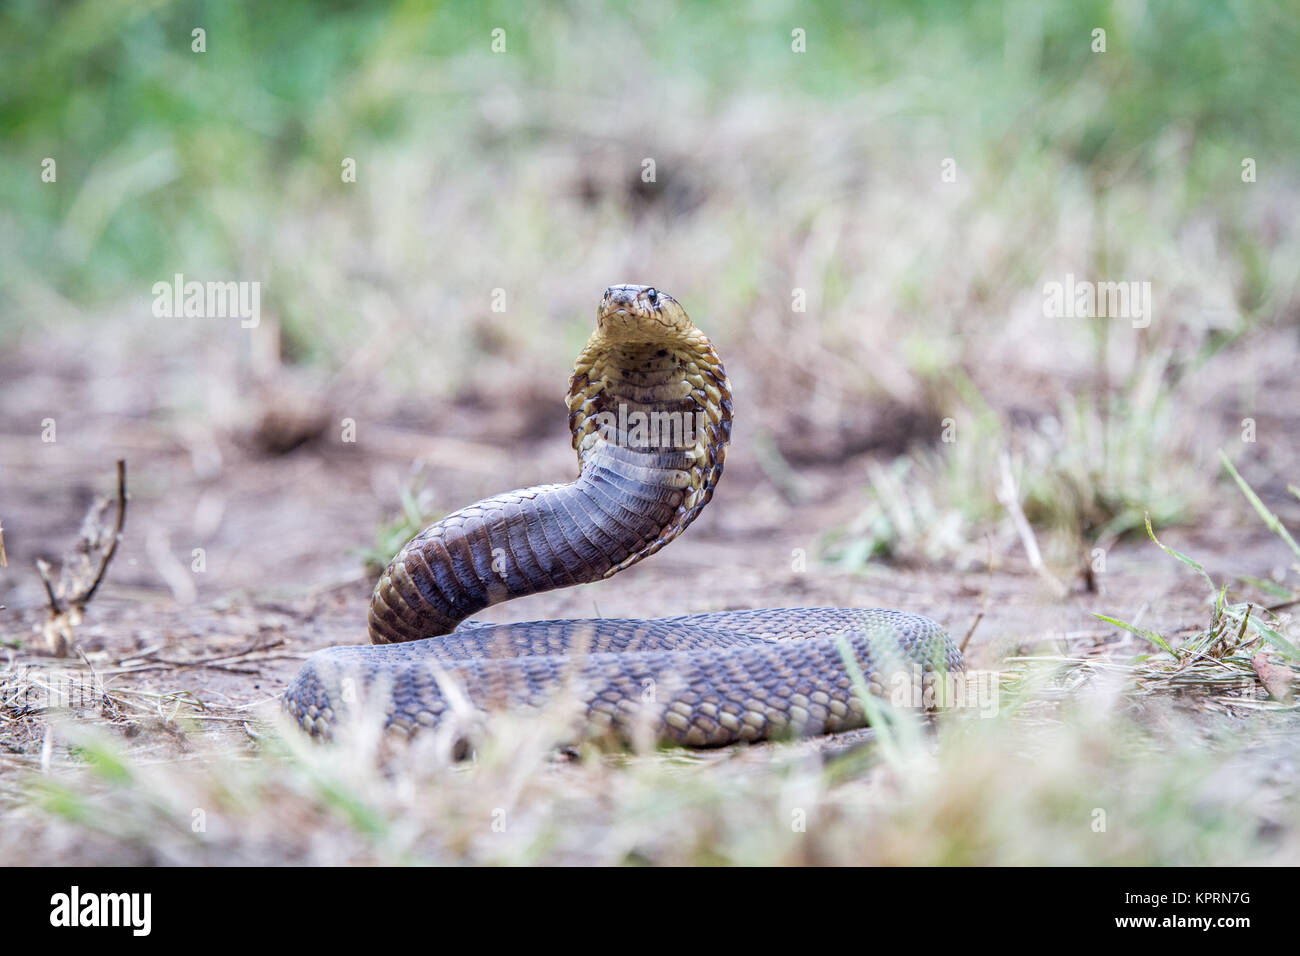 Snouted cobra en el suelo. Foto de stock